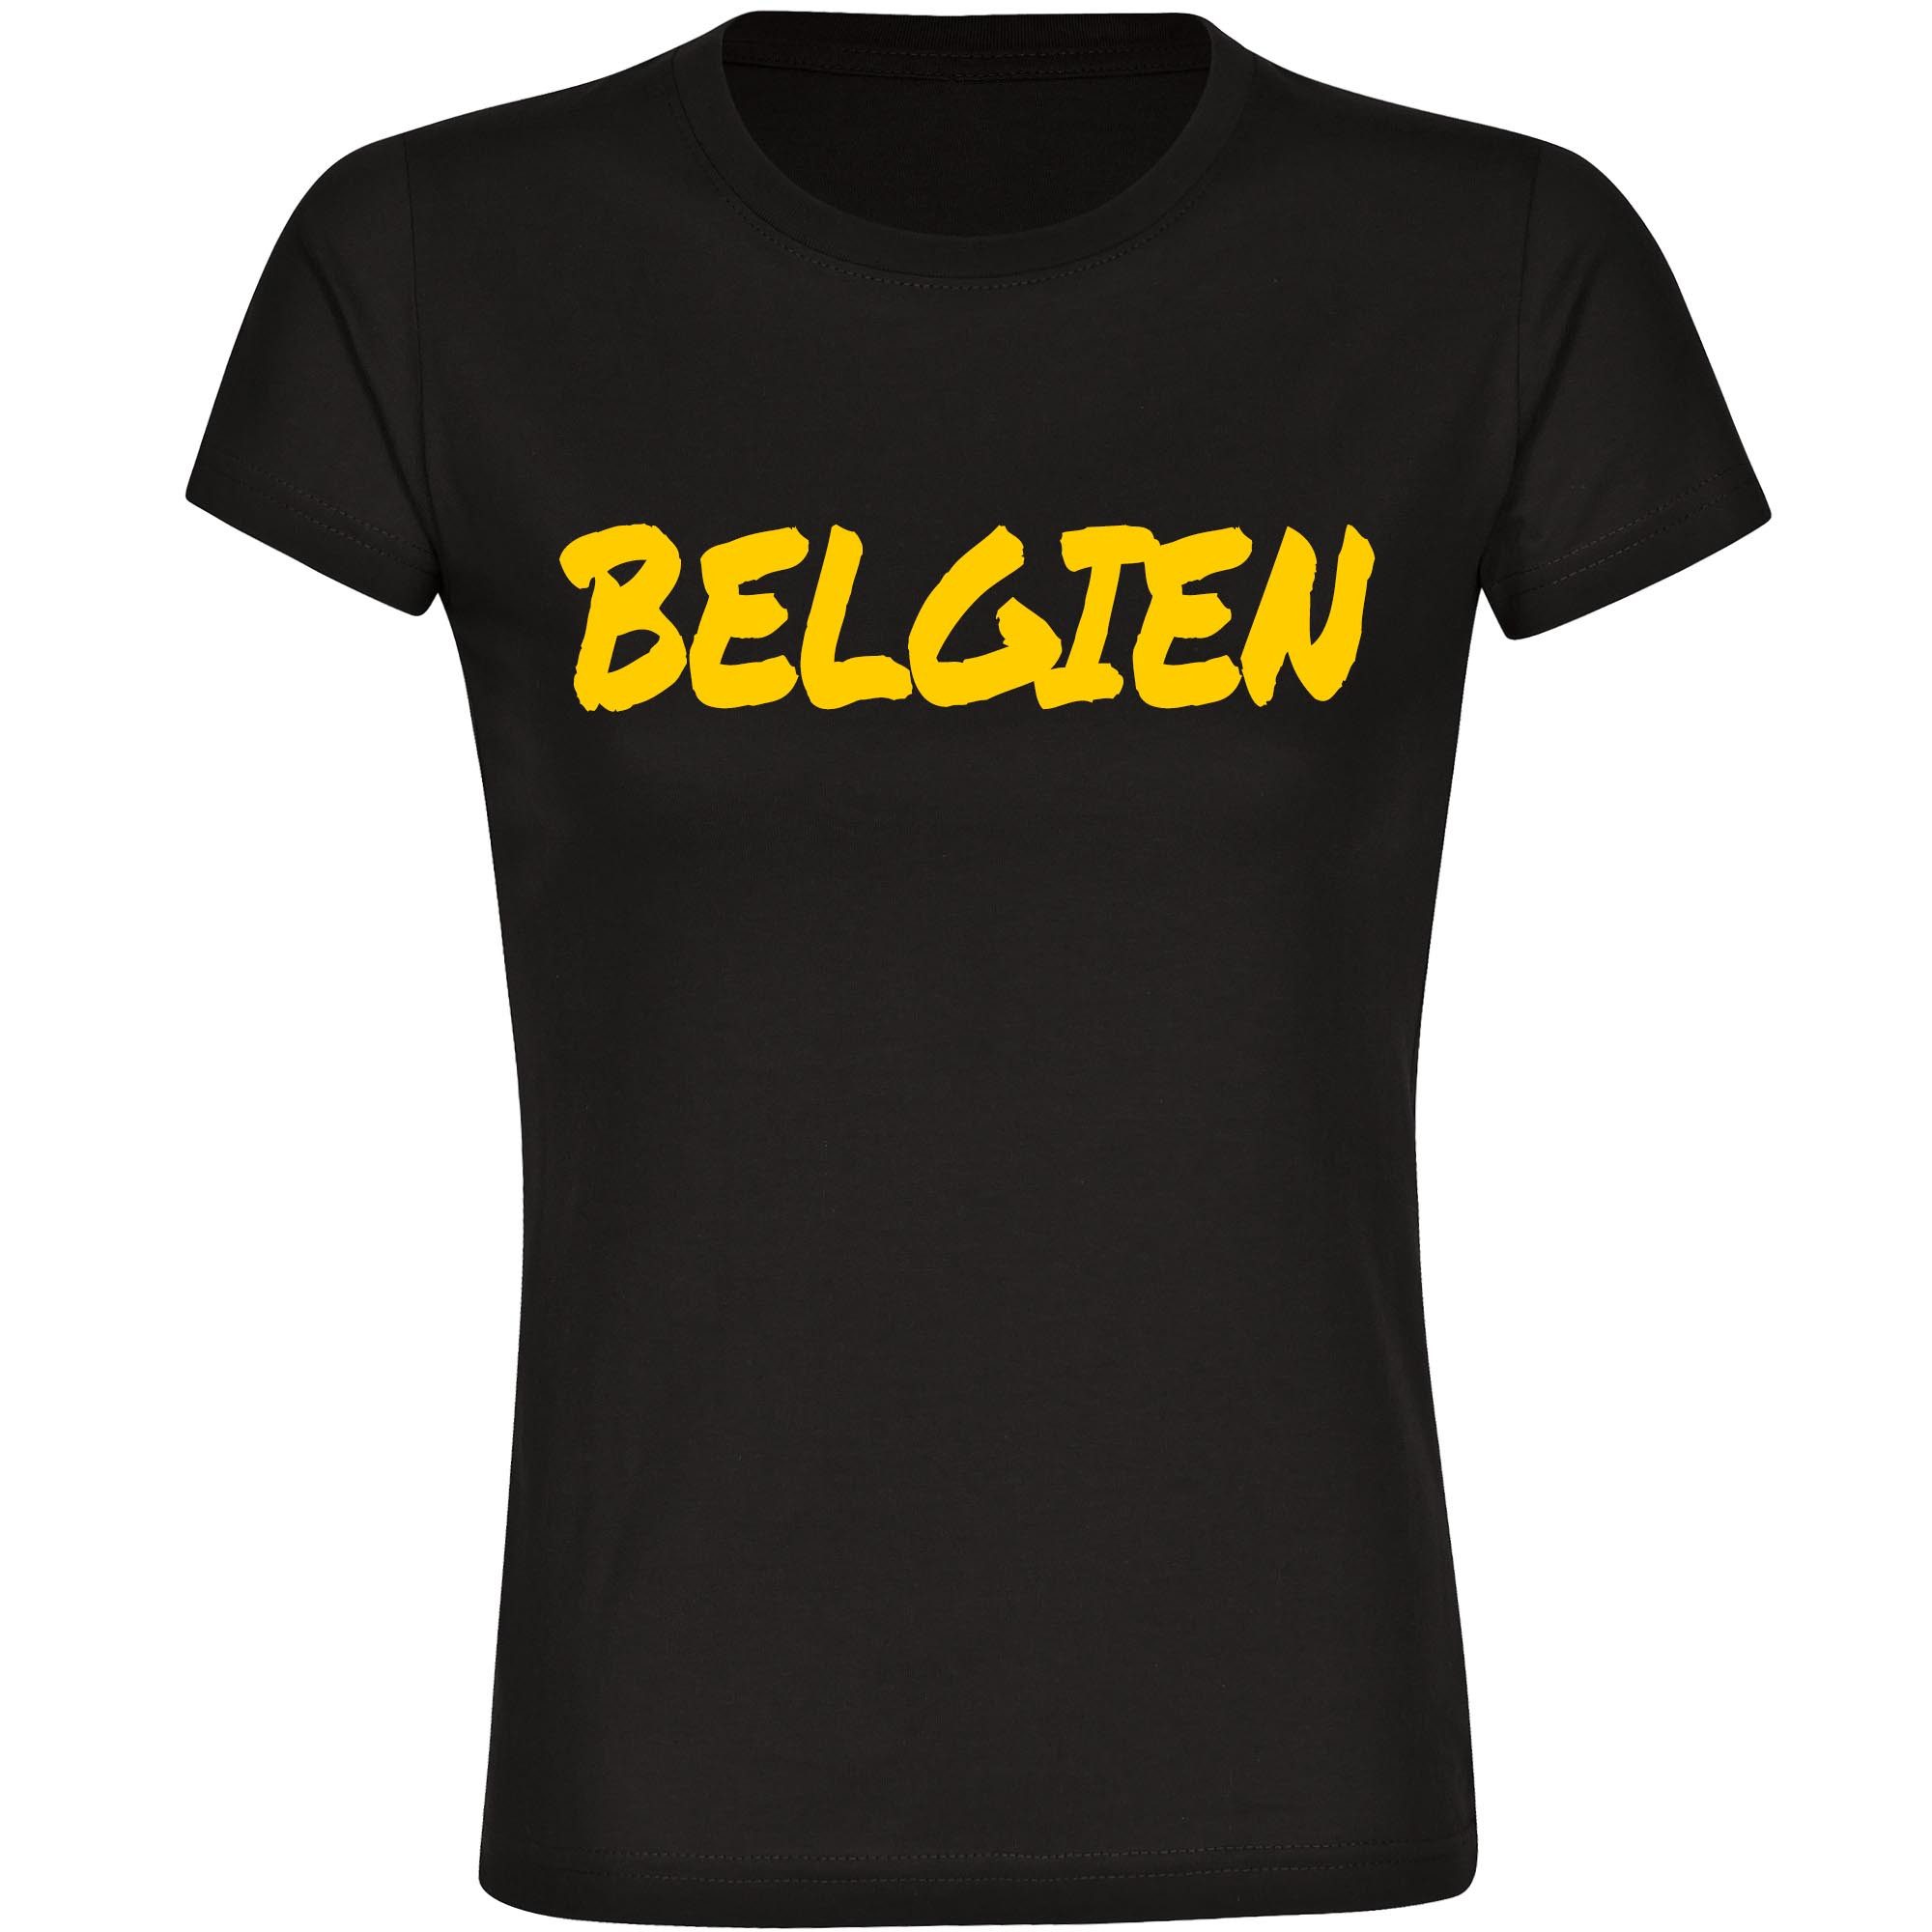 multifanshop T-Shirt Damen Belgien - Textmarker - Frauen